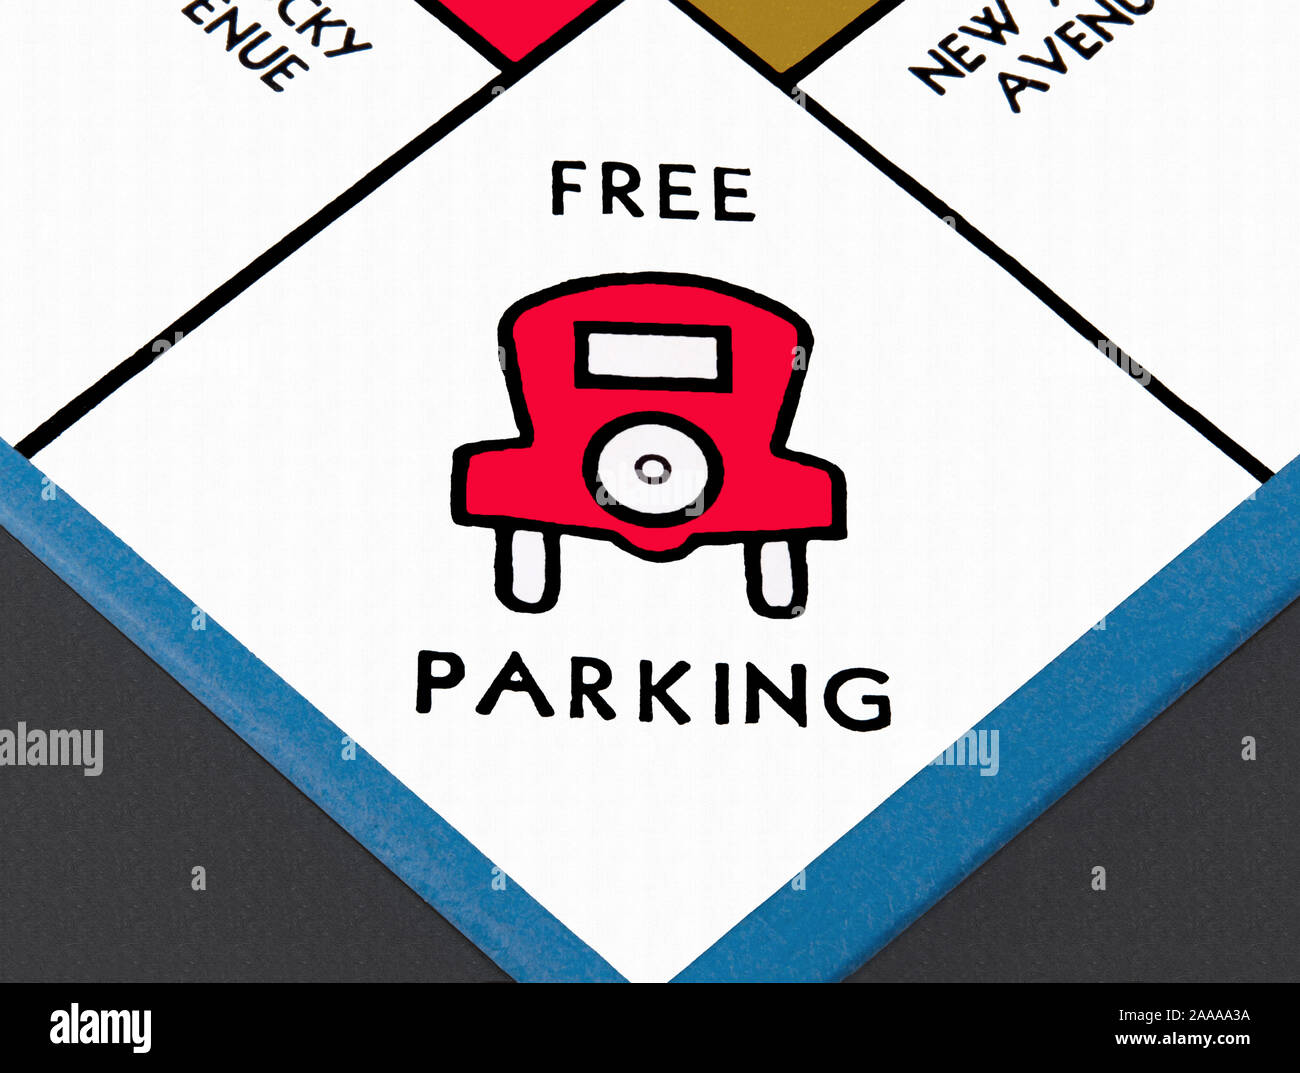 Kostenloser Parkplatz auf einem Monopol-Spielbrett. Stockfoto